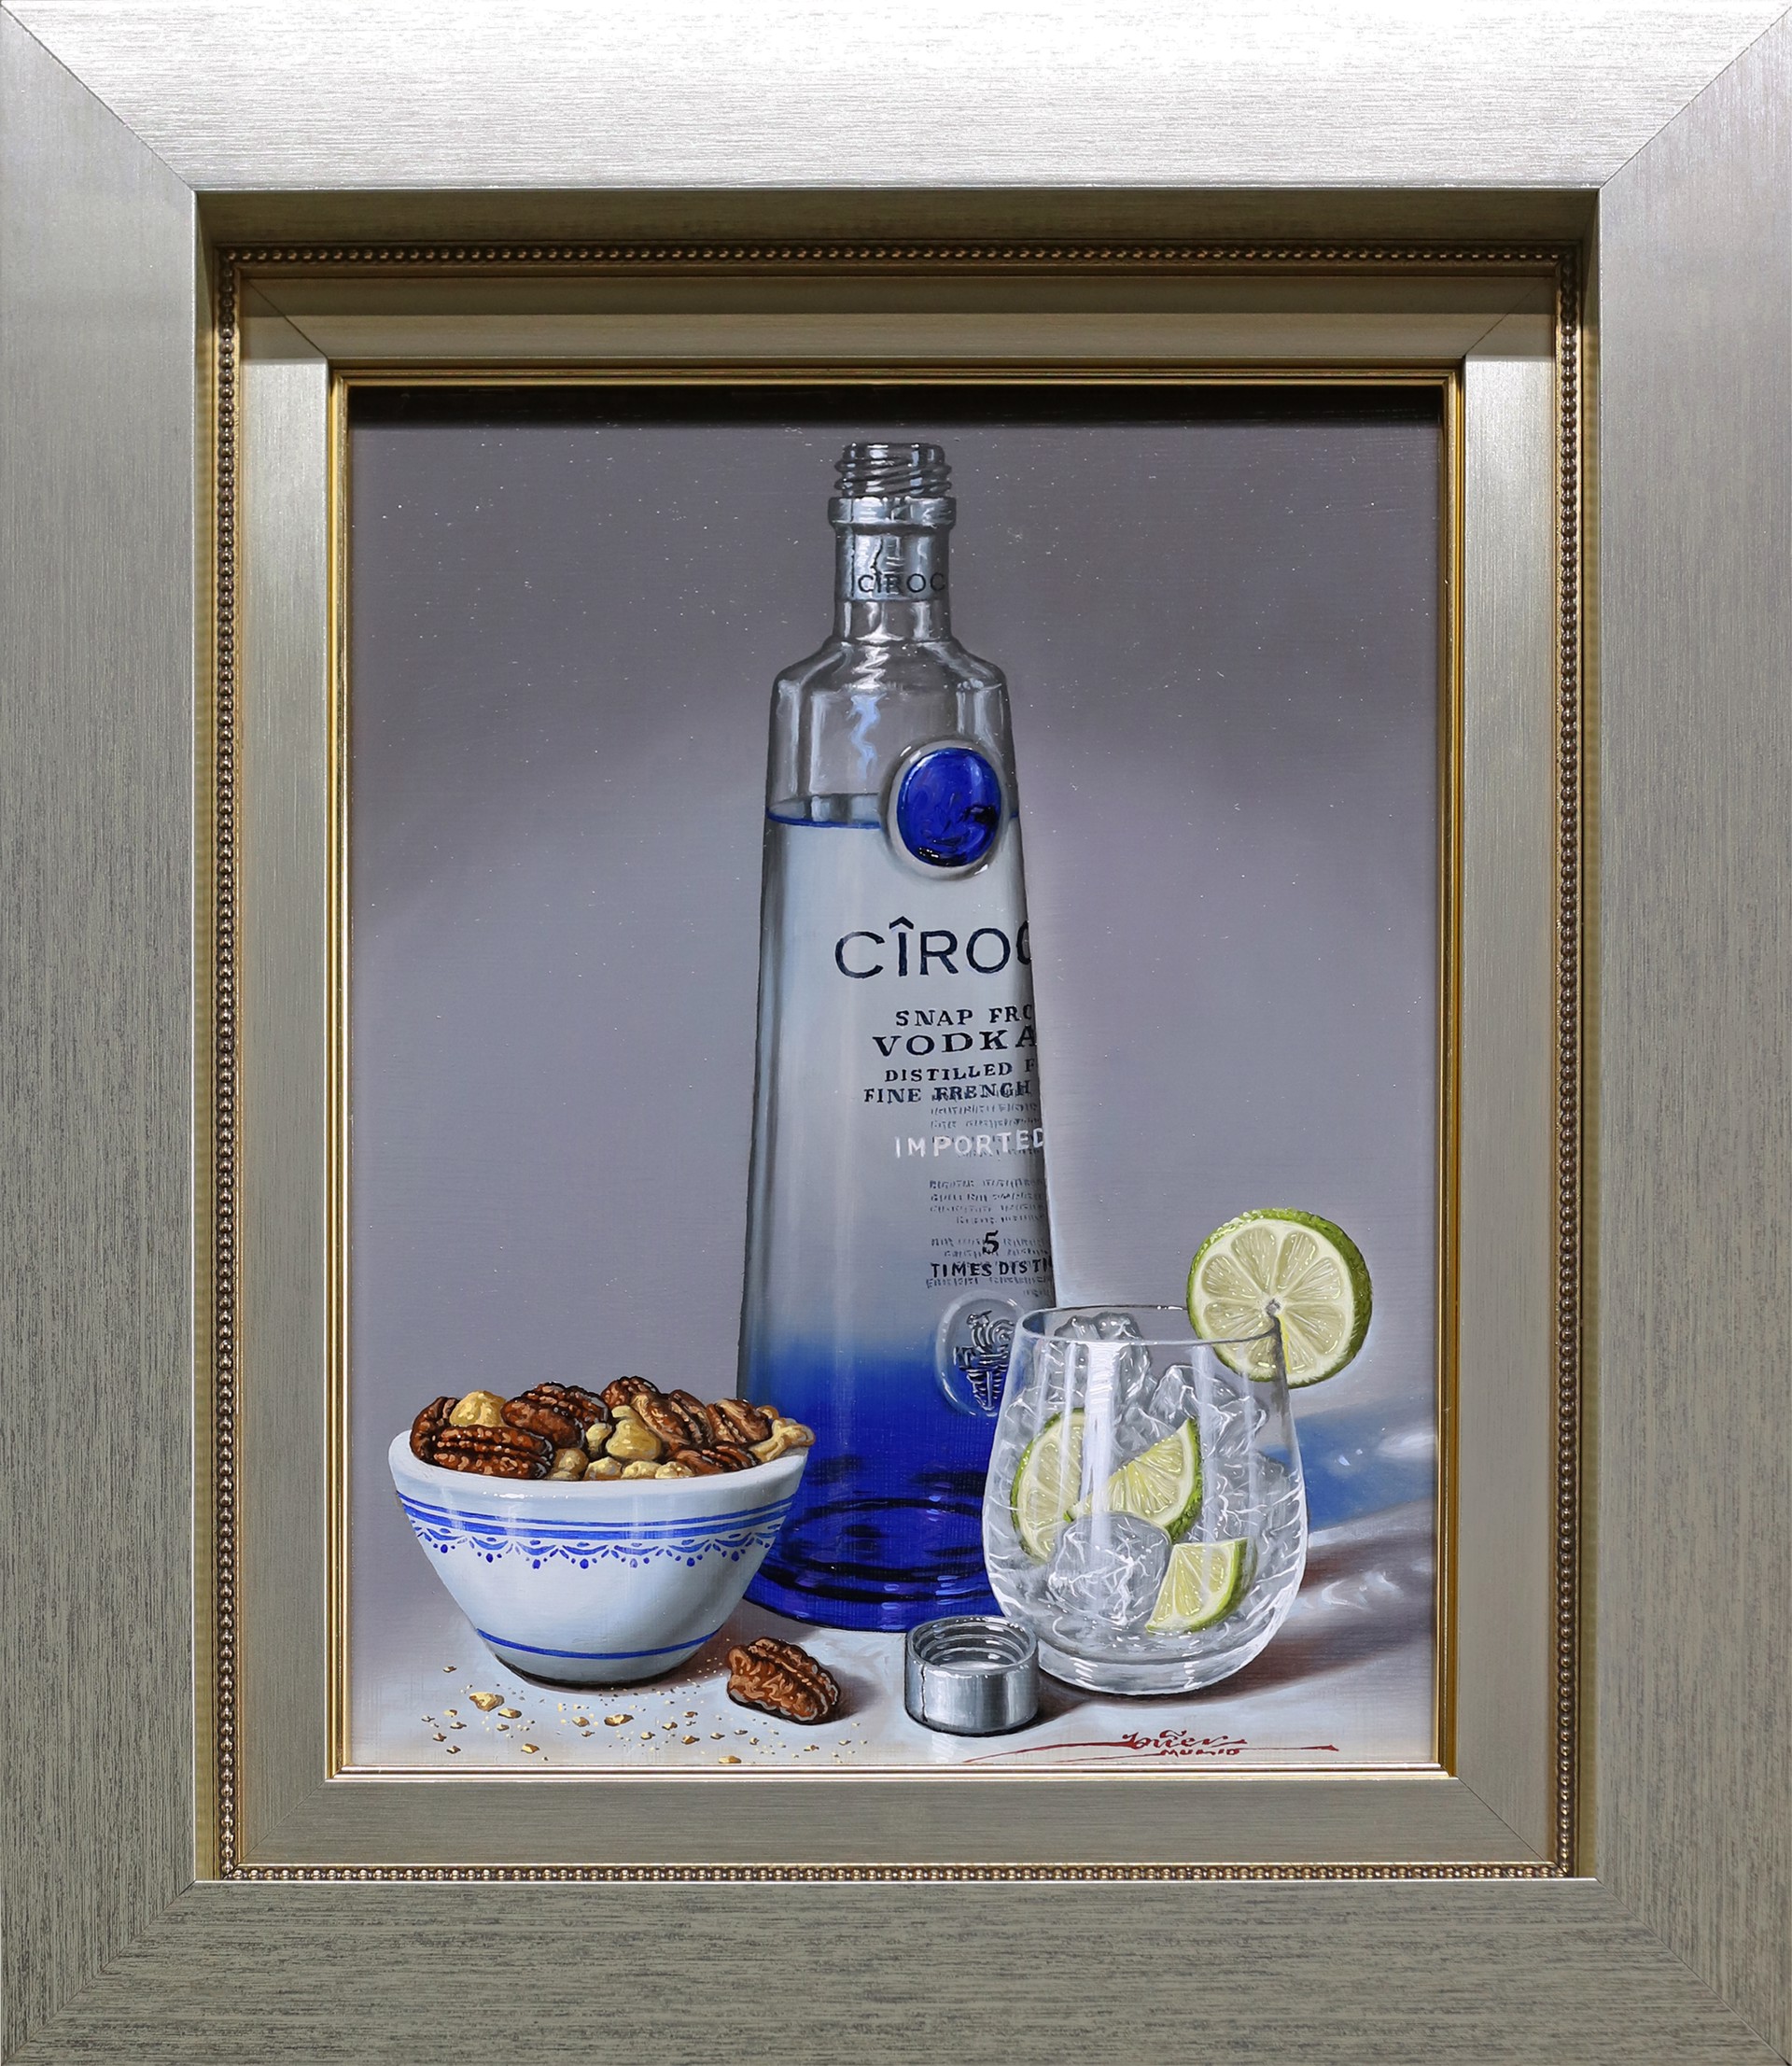 Ciroc Vodka by Javier Mulio